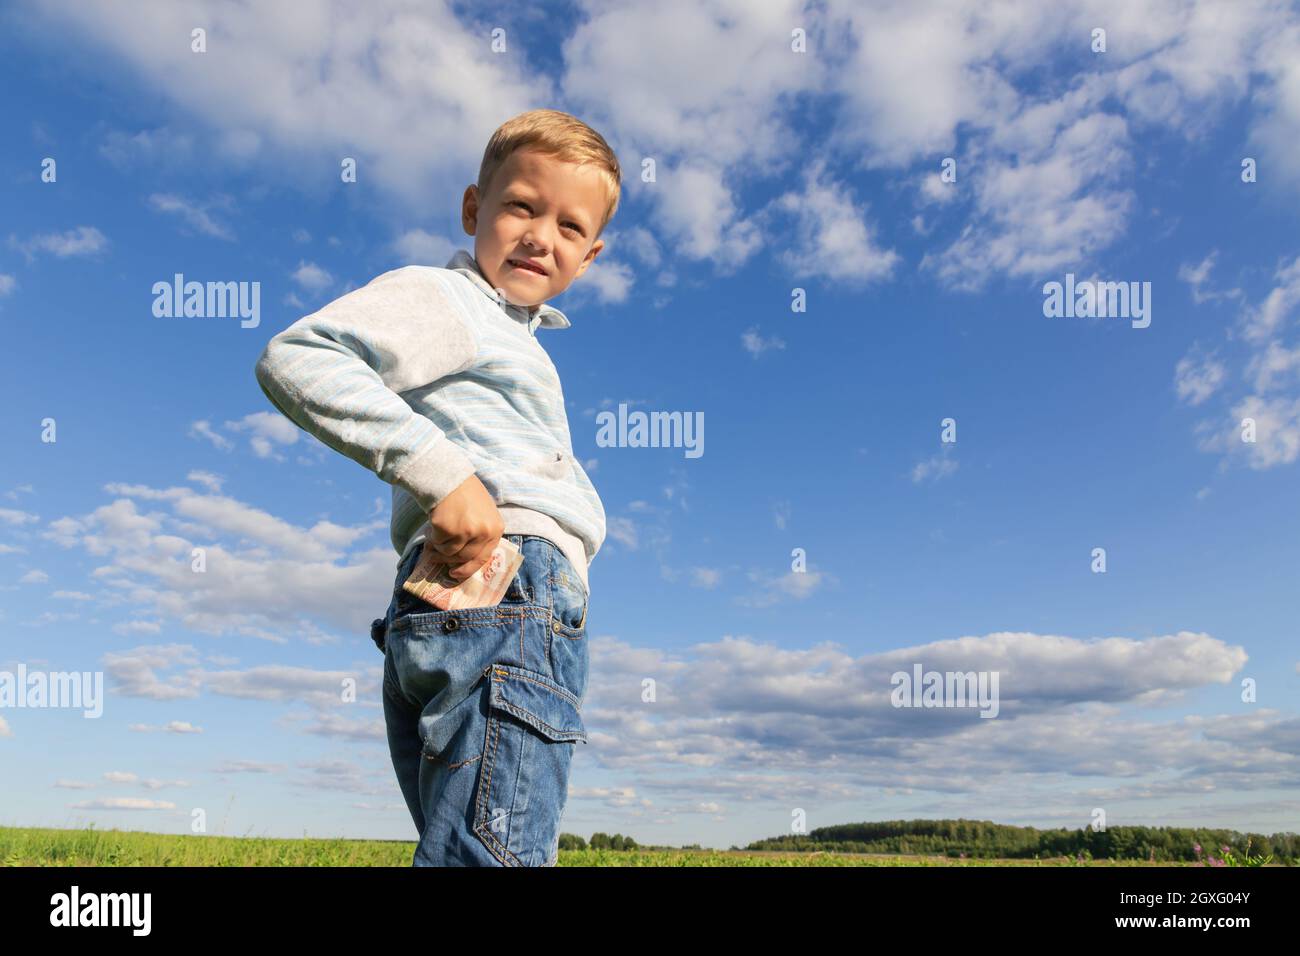 Un bambino di preschooler soddisfatto in jeans ed un maglione tiene i soldi di carta in natura in un campo contro lo sfondo di un cielo blu con le nuvole. Verticale Foto Stock